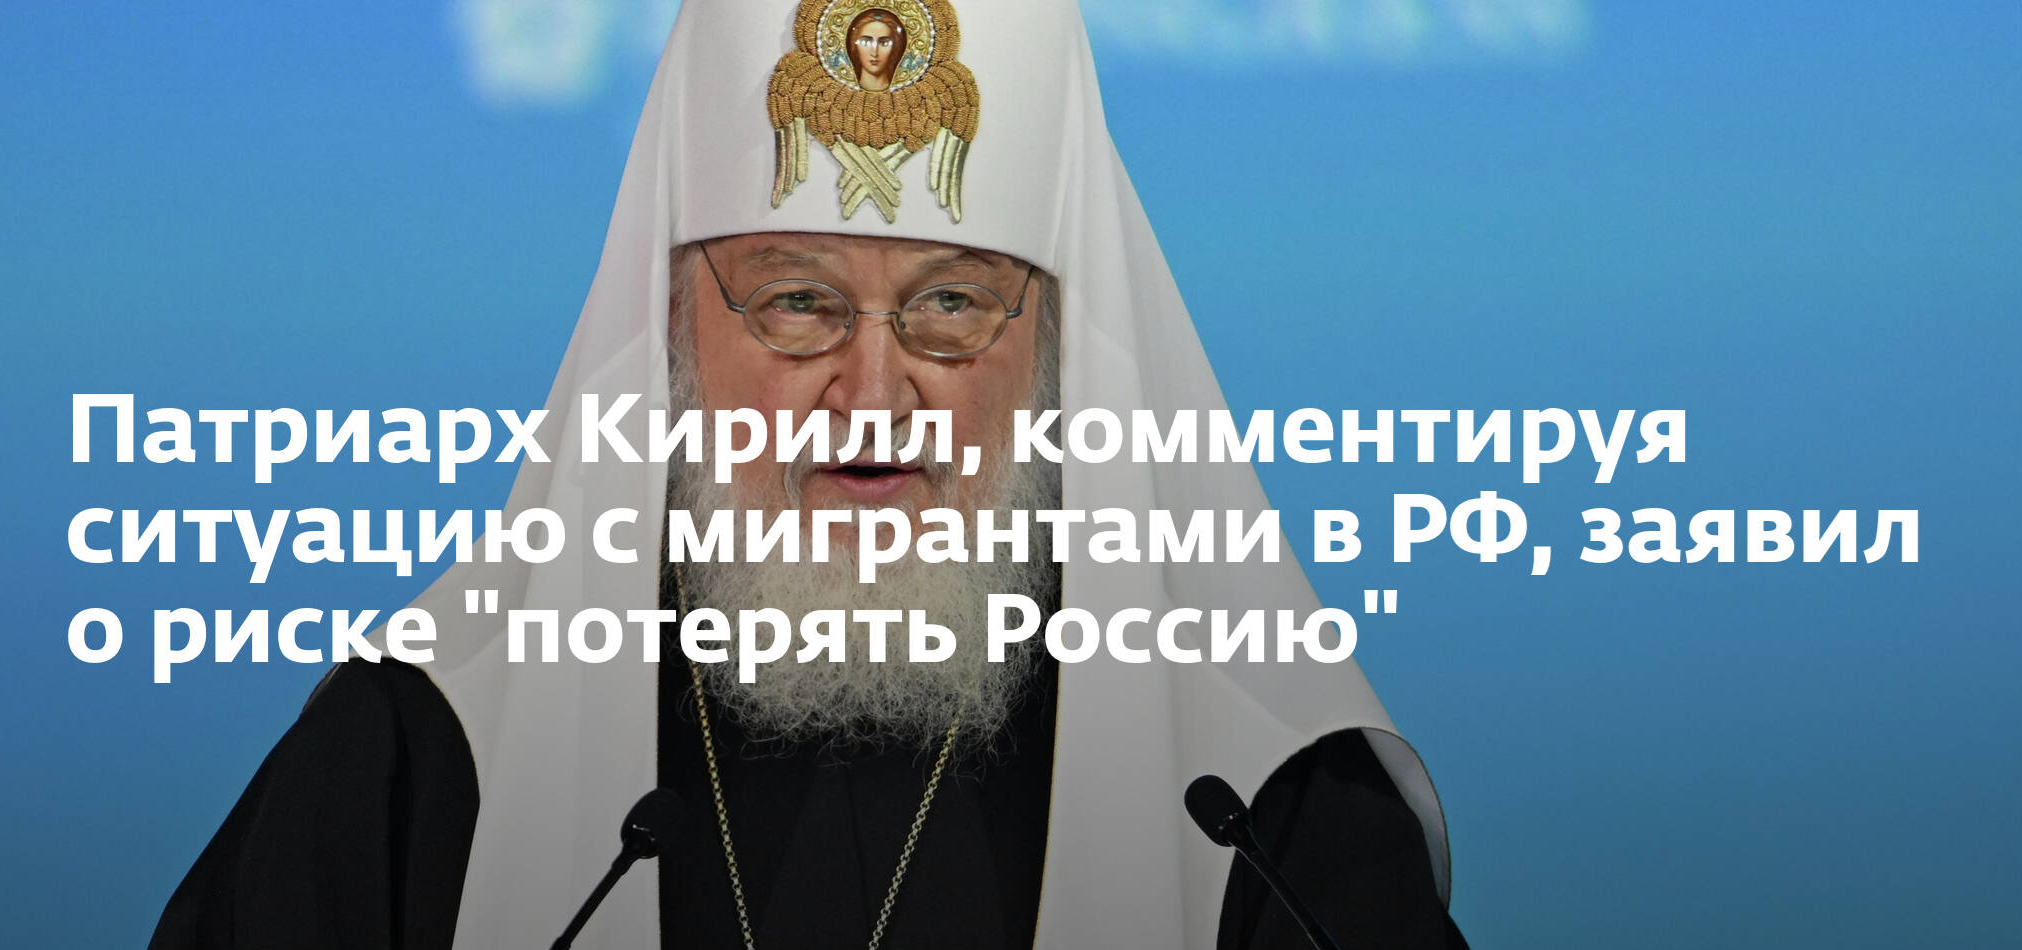 Патриарх заявил - есть риск потерять себя, потерять Россию